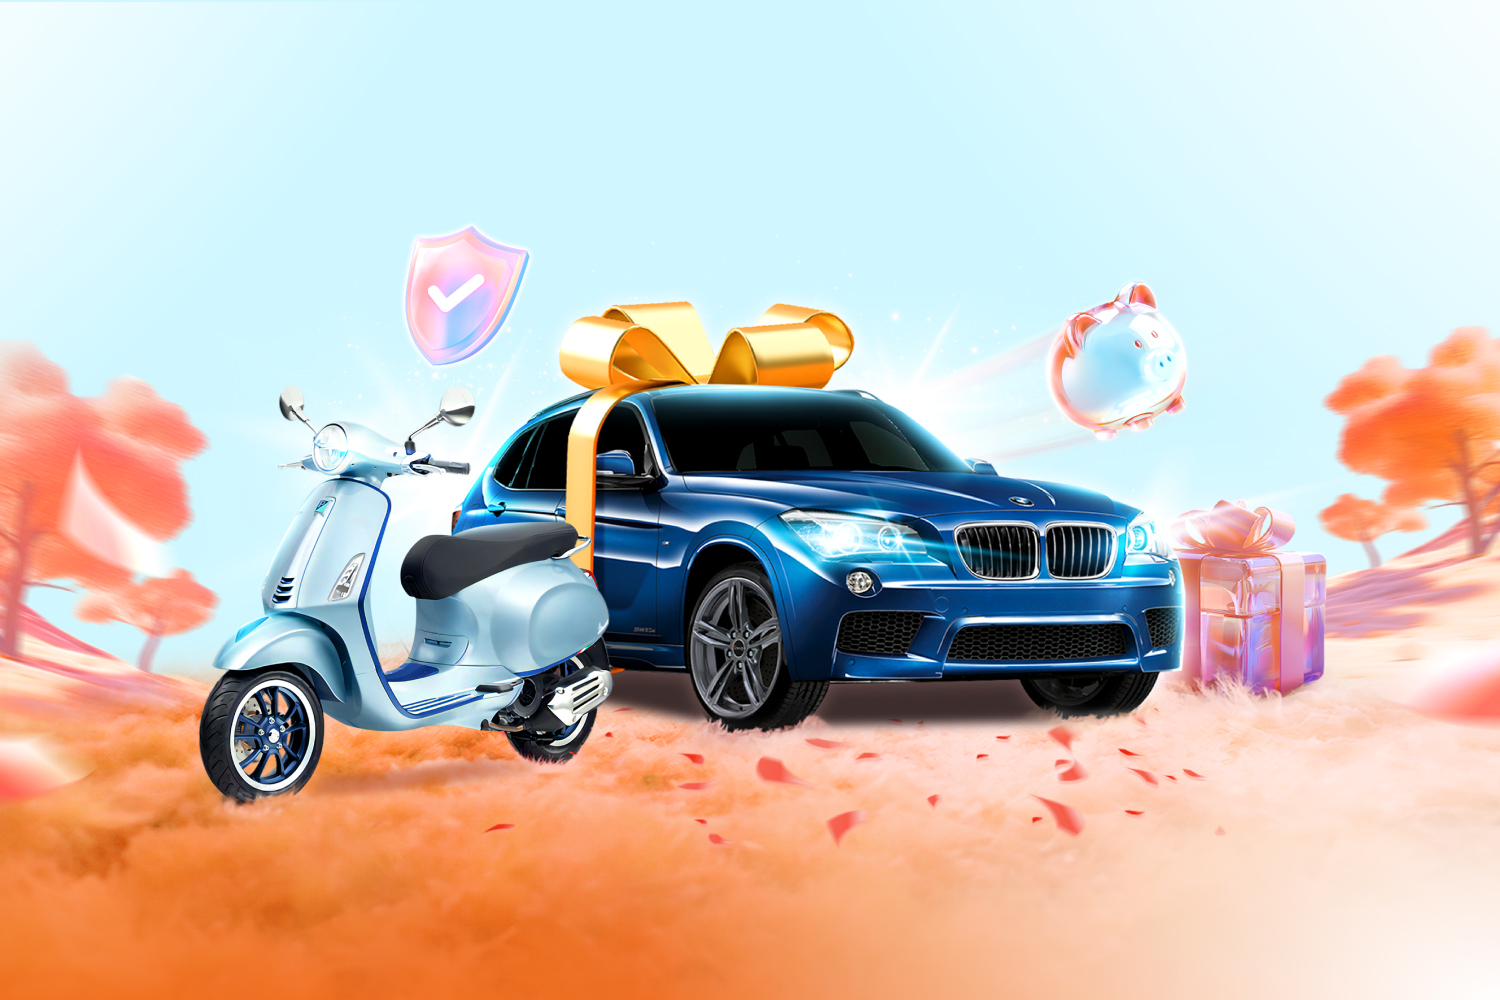 Xe ôtô BMW X3 M-sport và xe Vespa Primavera S125 là hai giải thưởng giá trị cao nhất của chương trình Hè Sang - Quà Xịn. Ảnh: Sacombank